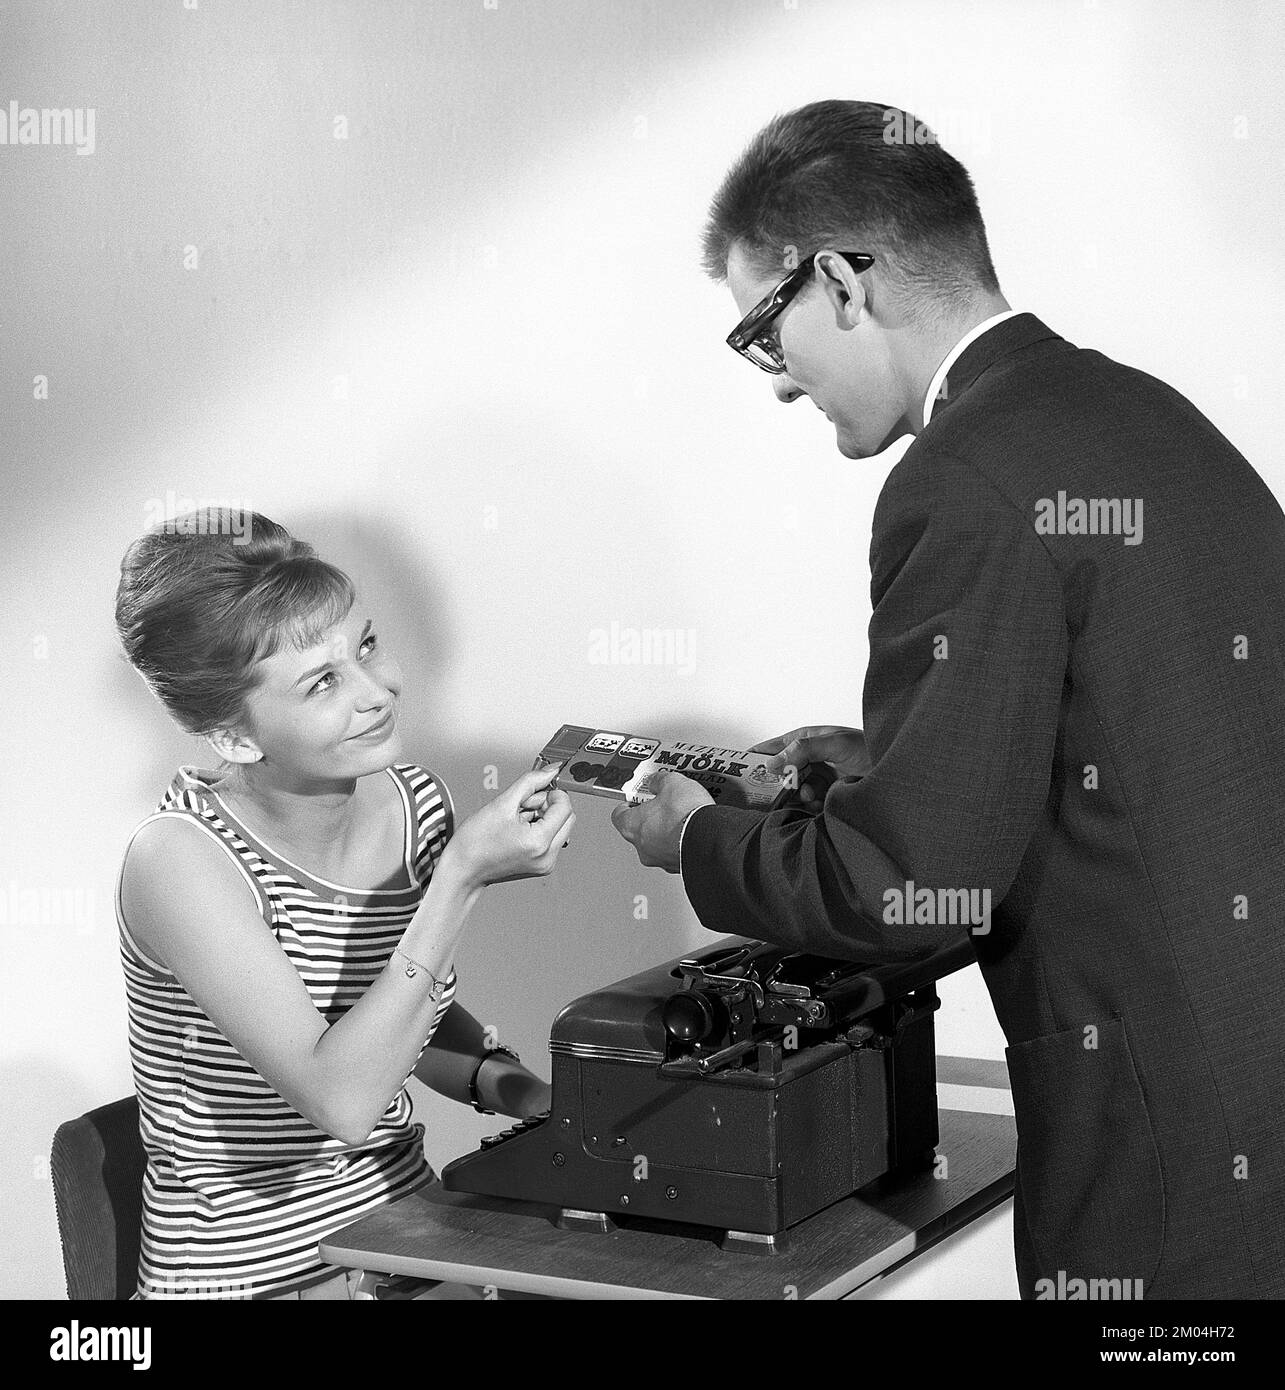 Chocolat dans le 1960s. Un homme offre à une femme un morceau d'une barre de chocolat. Elle est assise par sa machine à écrire. Elle a ses cheveux dans la coiffure de ruche typique, dans laquelle les cheveux longs sont empilés sur le dessus de la tête et donnant une certaine ressemblance à la forme d'une ruche traditionnelle. Suède 1963. Kristoffersson réf. CZ54 Banque D'Images